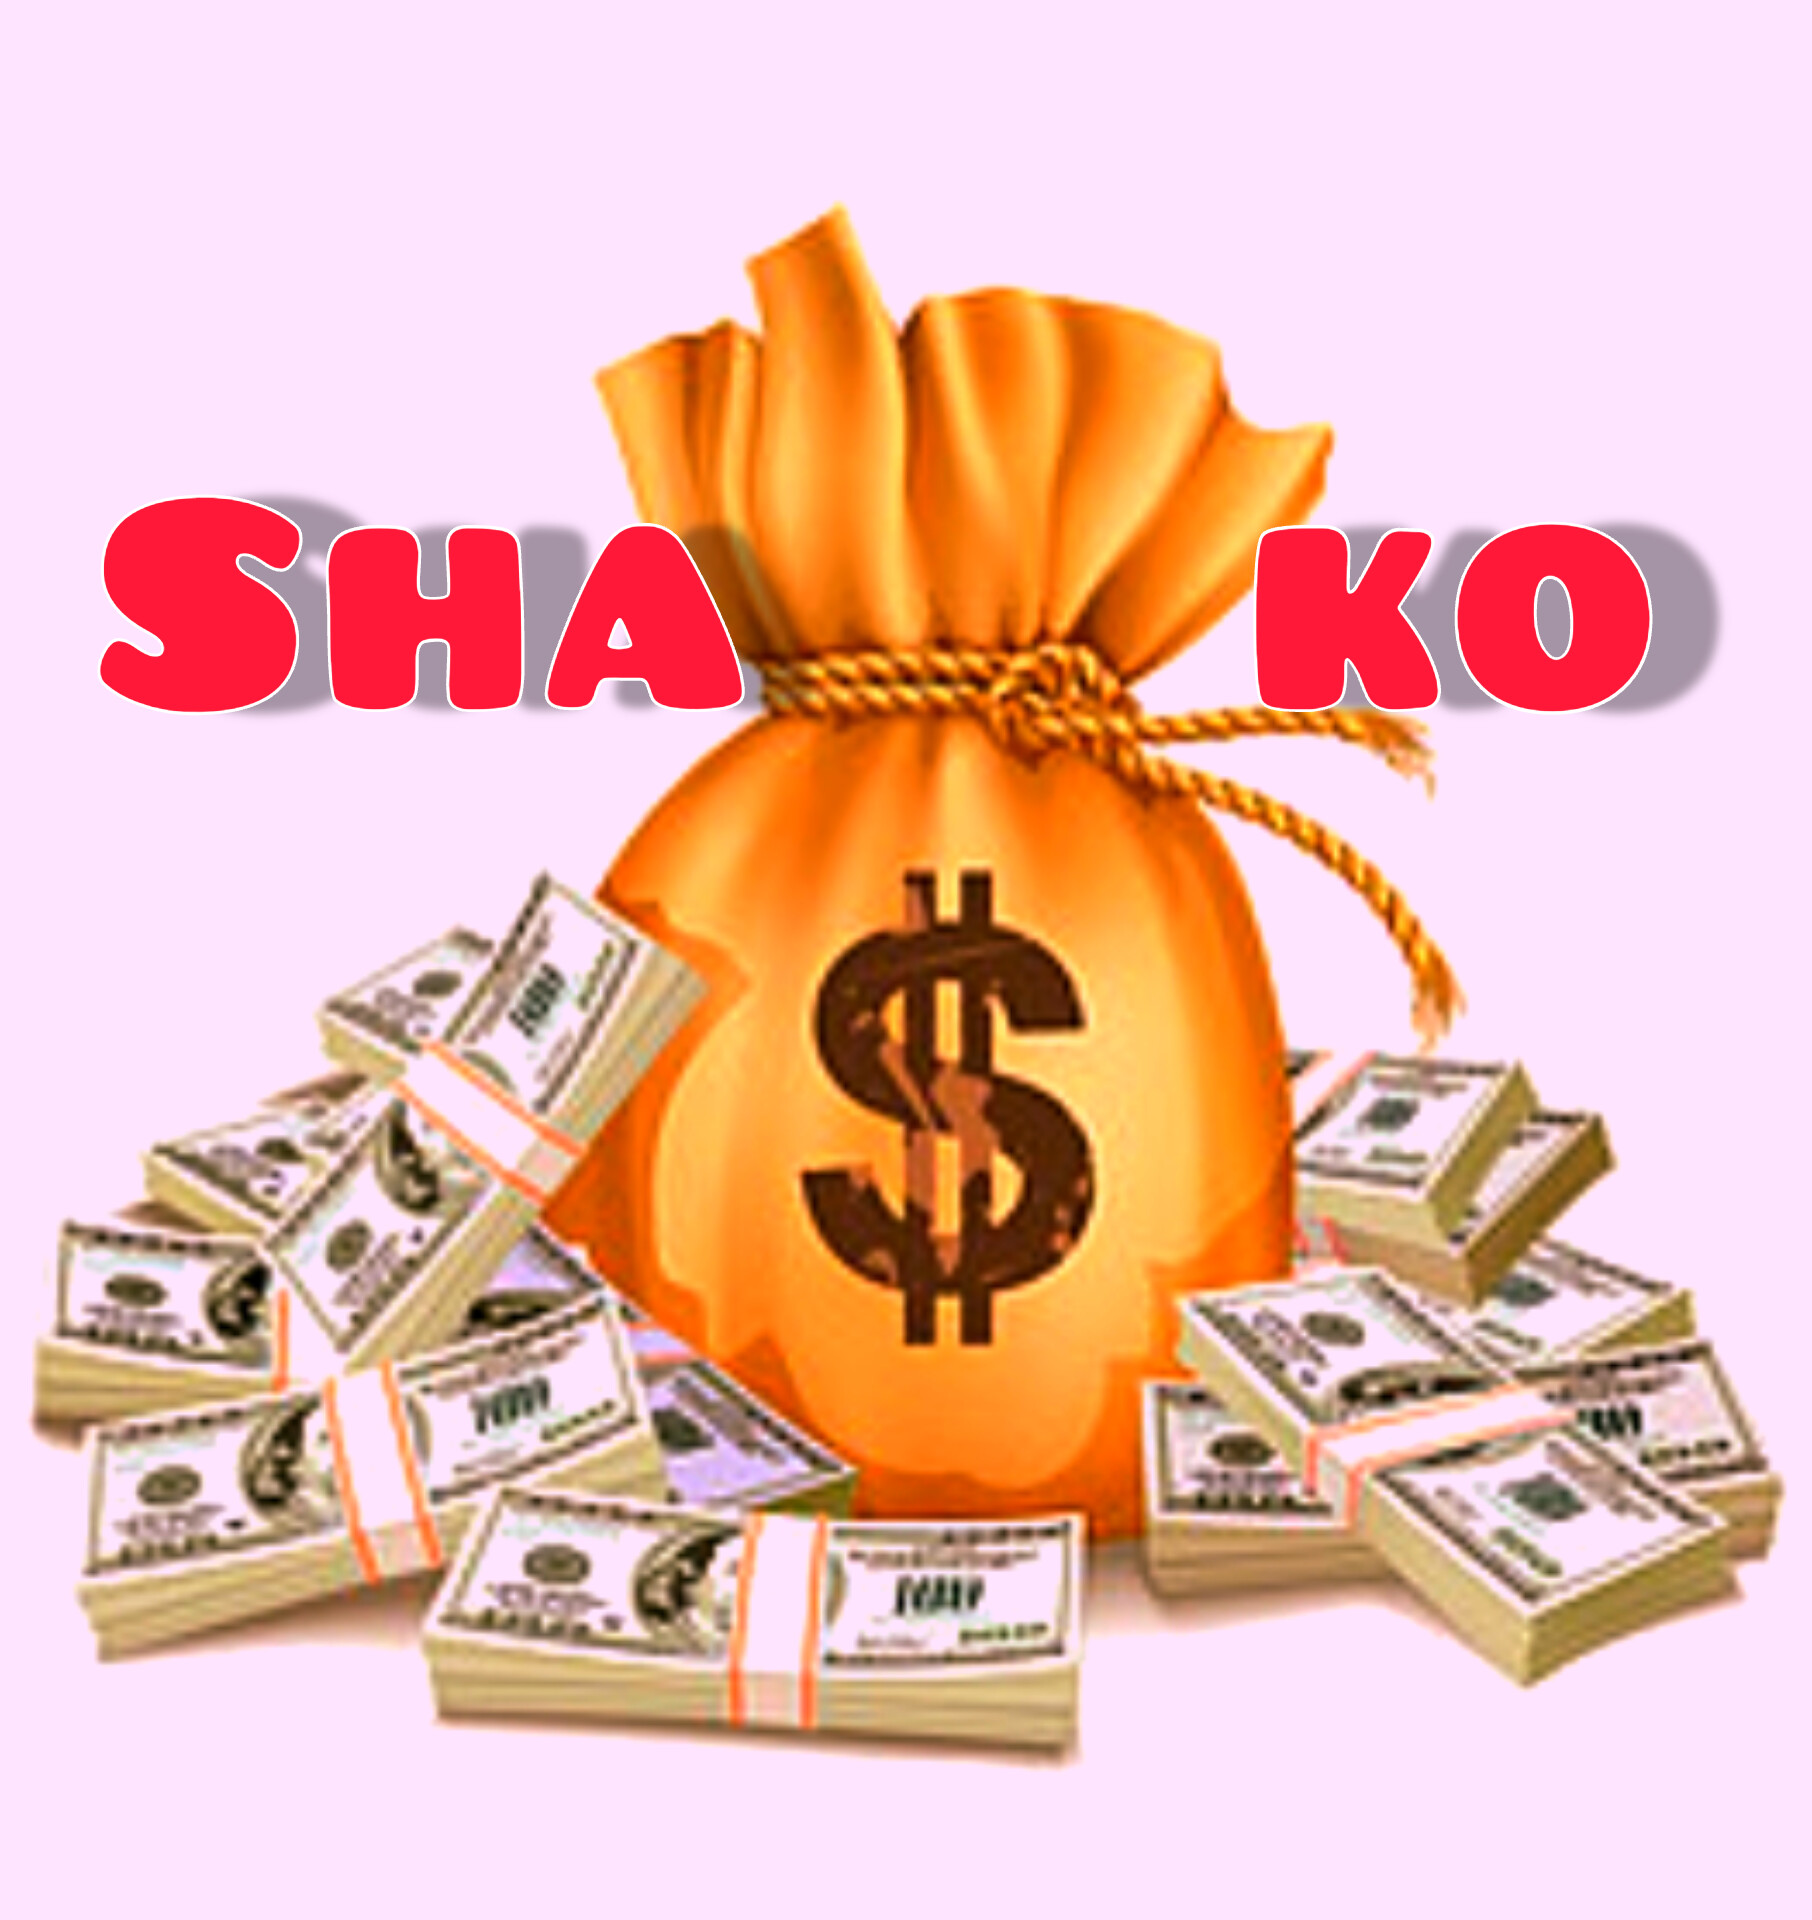 Shako (Ft Shako)